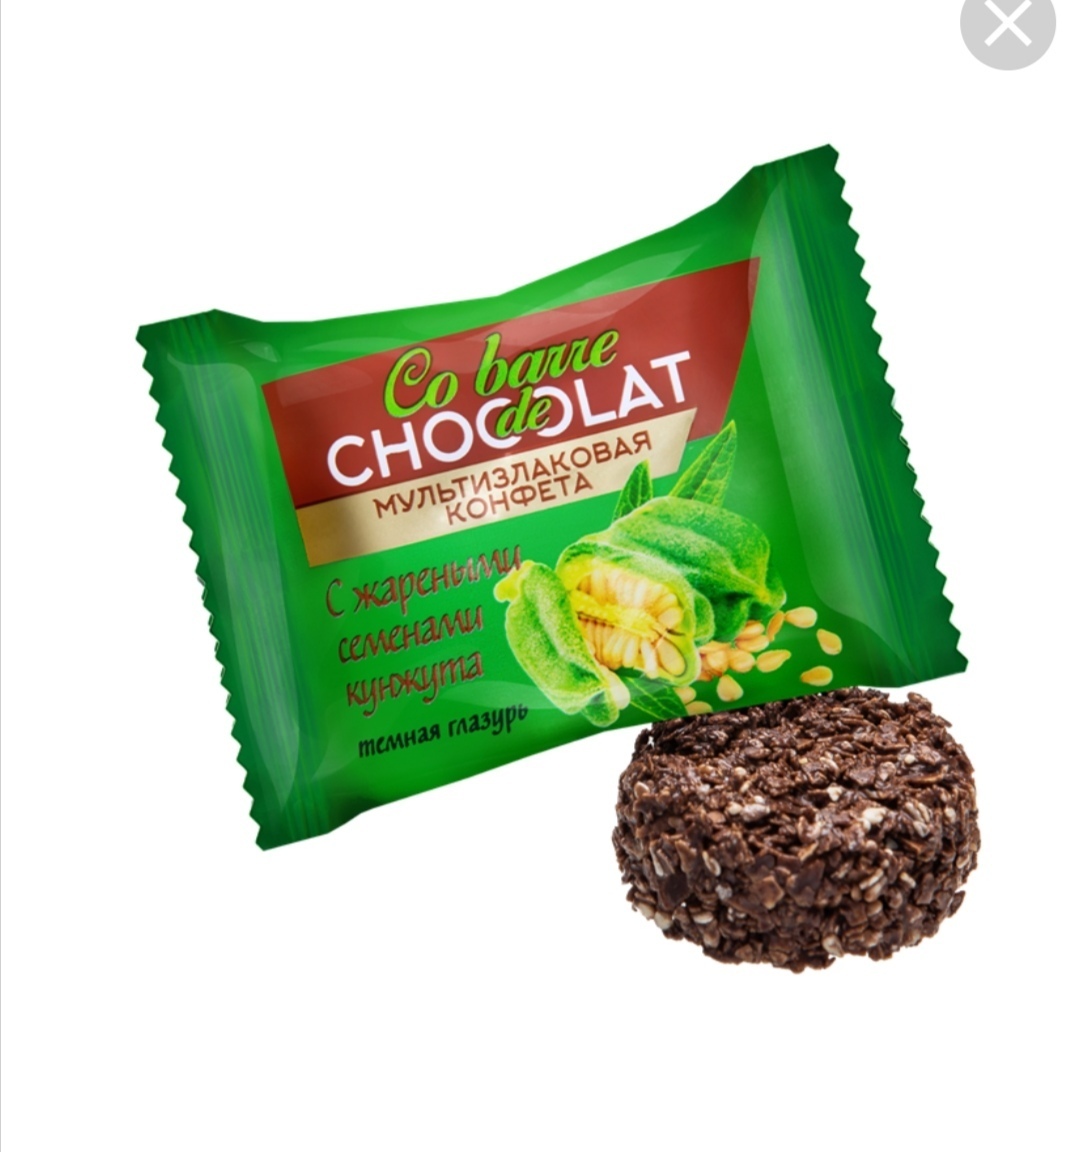 Мультизлаковая конфета Cobarde Chocolate